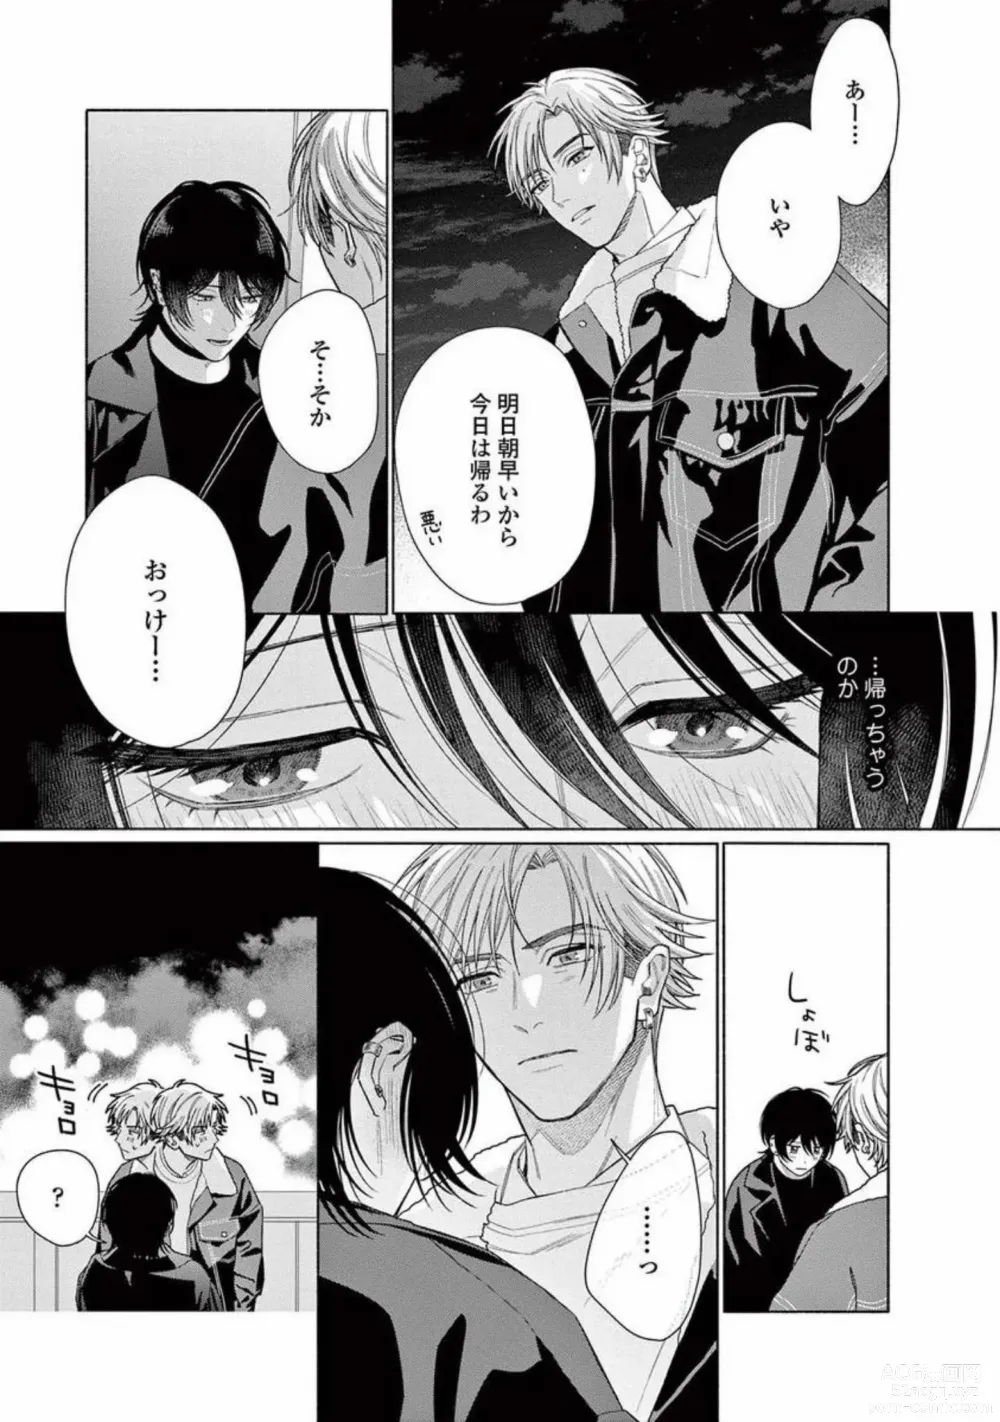 Page 197 of manga Junjou de Nani ga Warui - Whats wrong with being innocent?